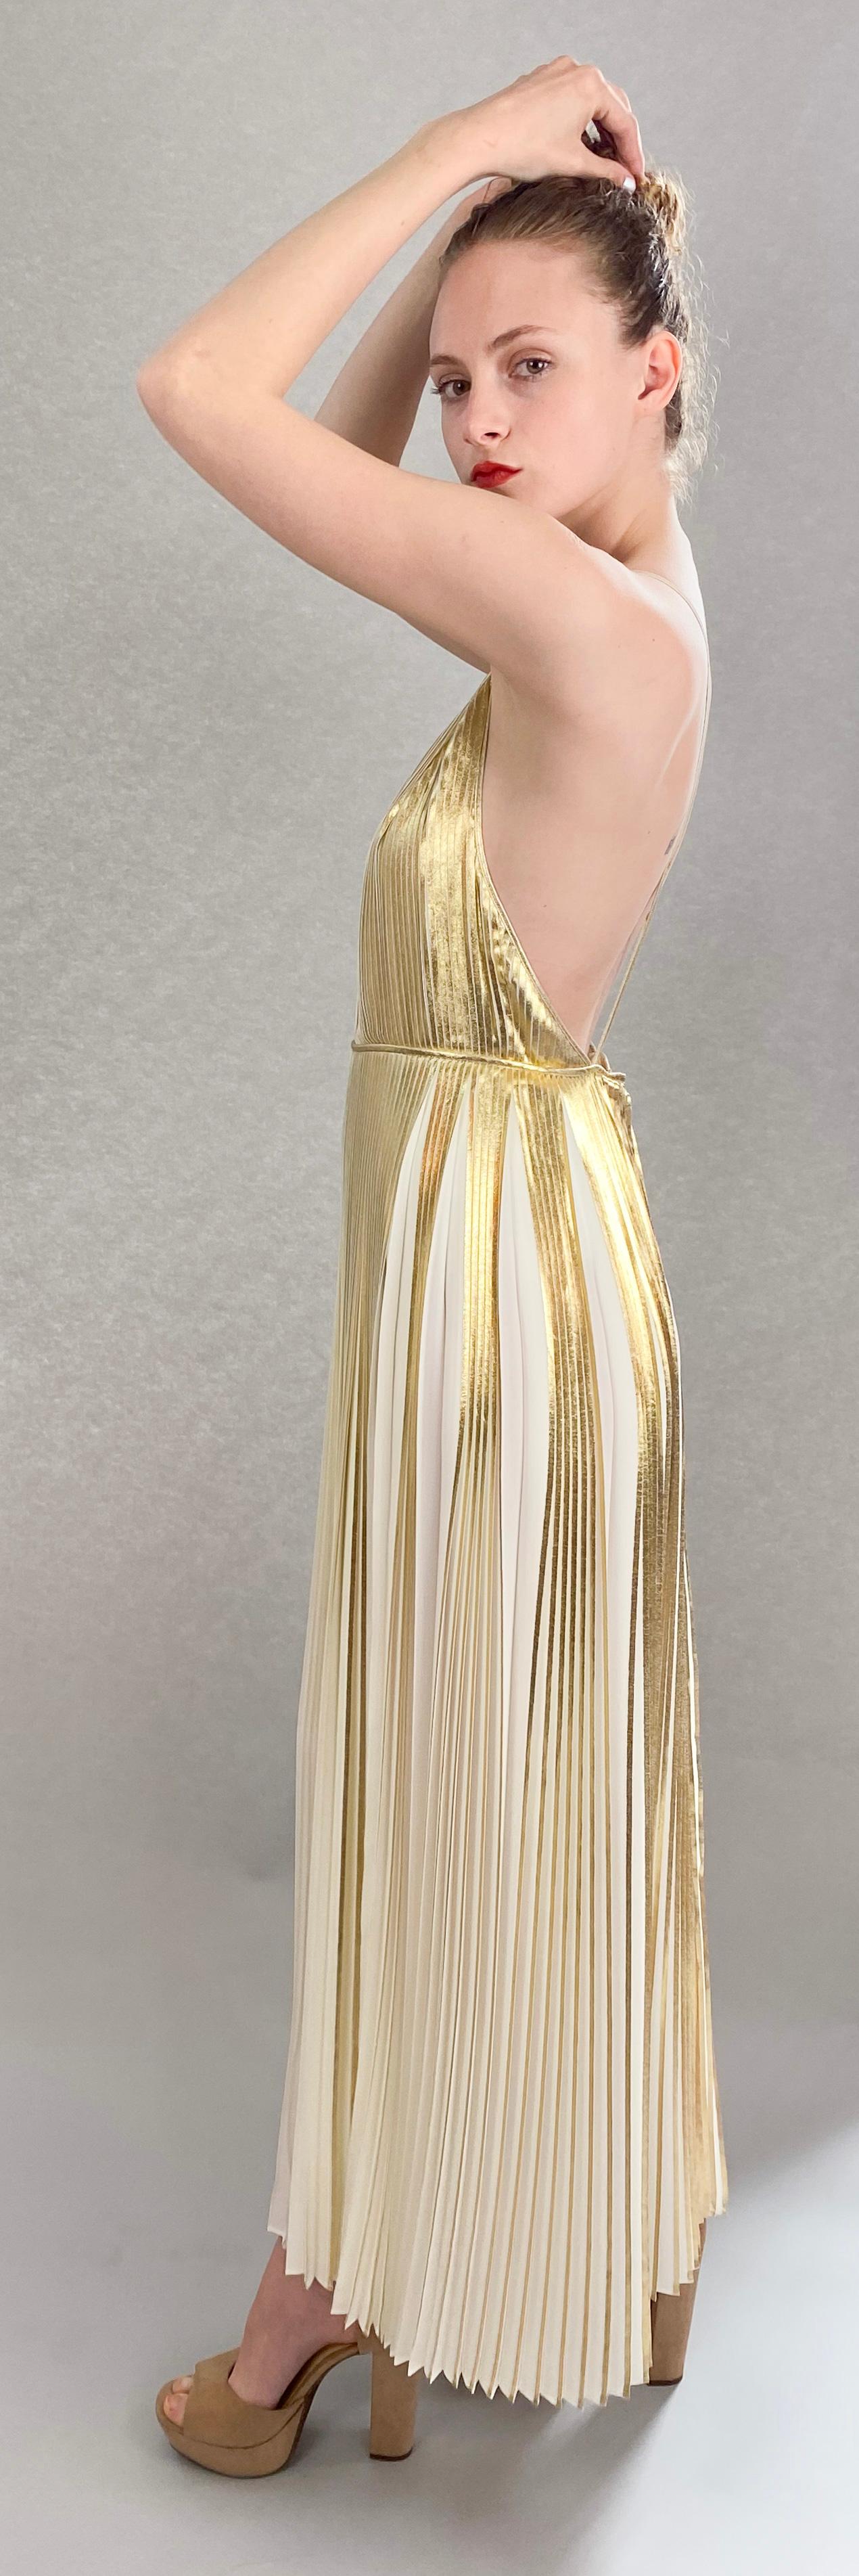 Découvrez un nouveau niveau de luxe avec notre robe plissée en or métallisé Valentino. Fabrice en lamé de qualité supérieure, cette robe présente un décolleté en V profond sensuel, rehaussé d'un élégant passepoil sous la poitrine. Élevez votre style